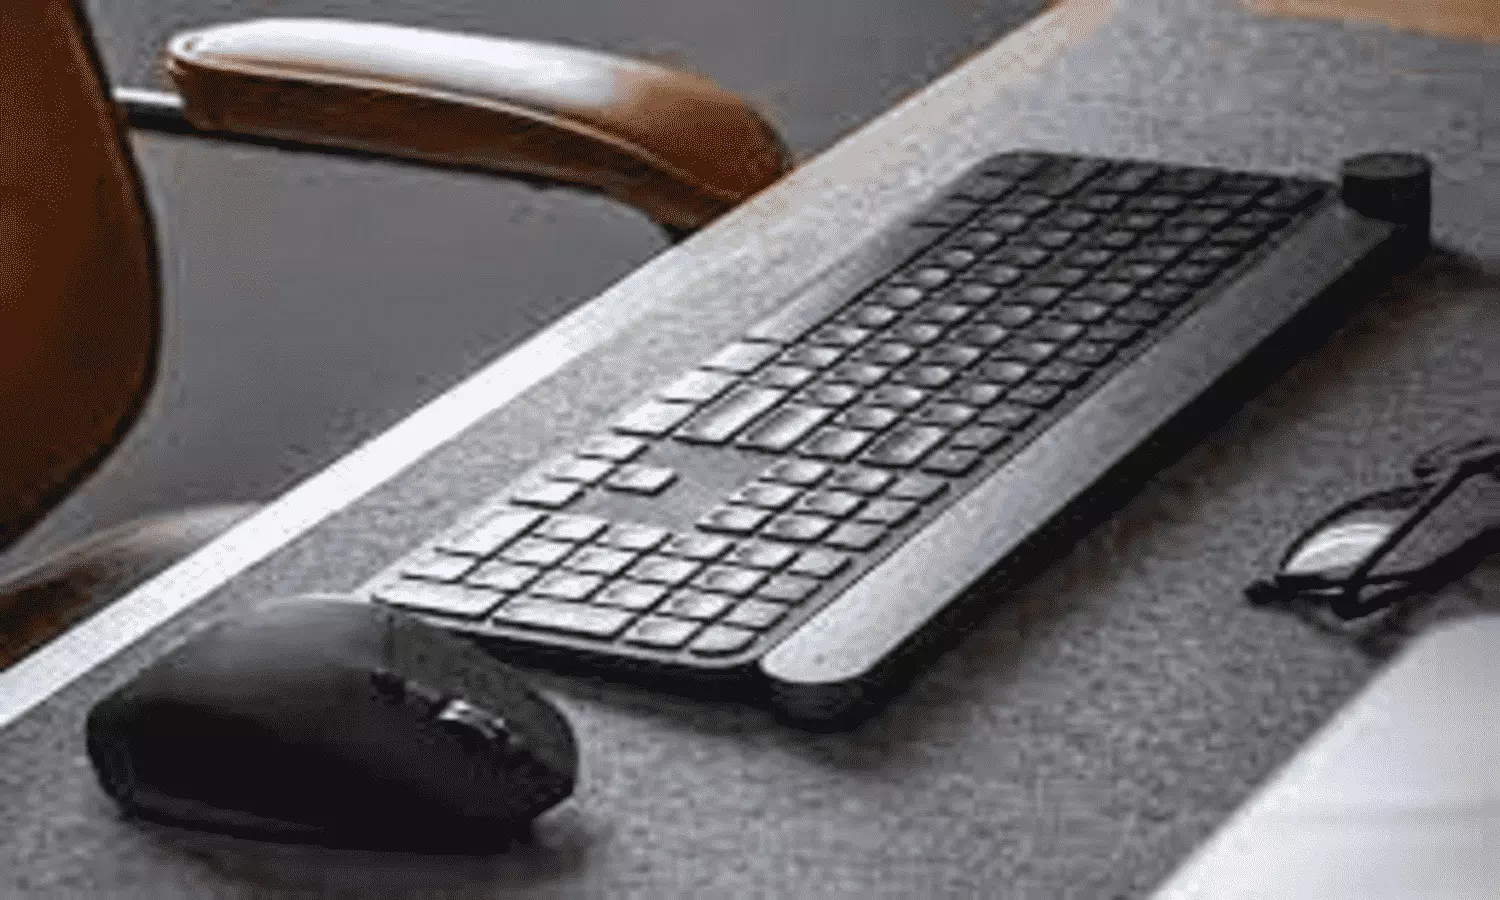 Best Wireless Mouse Keyboard